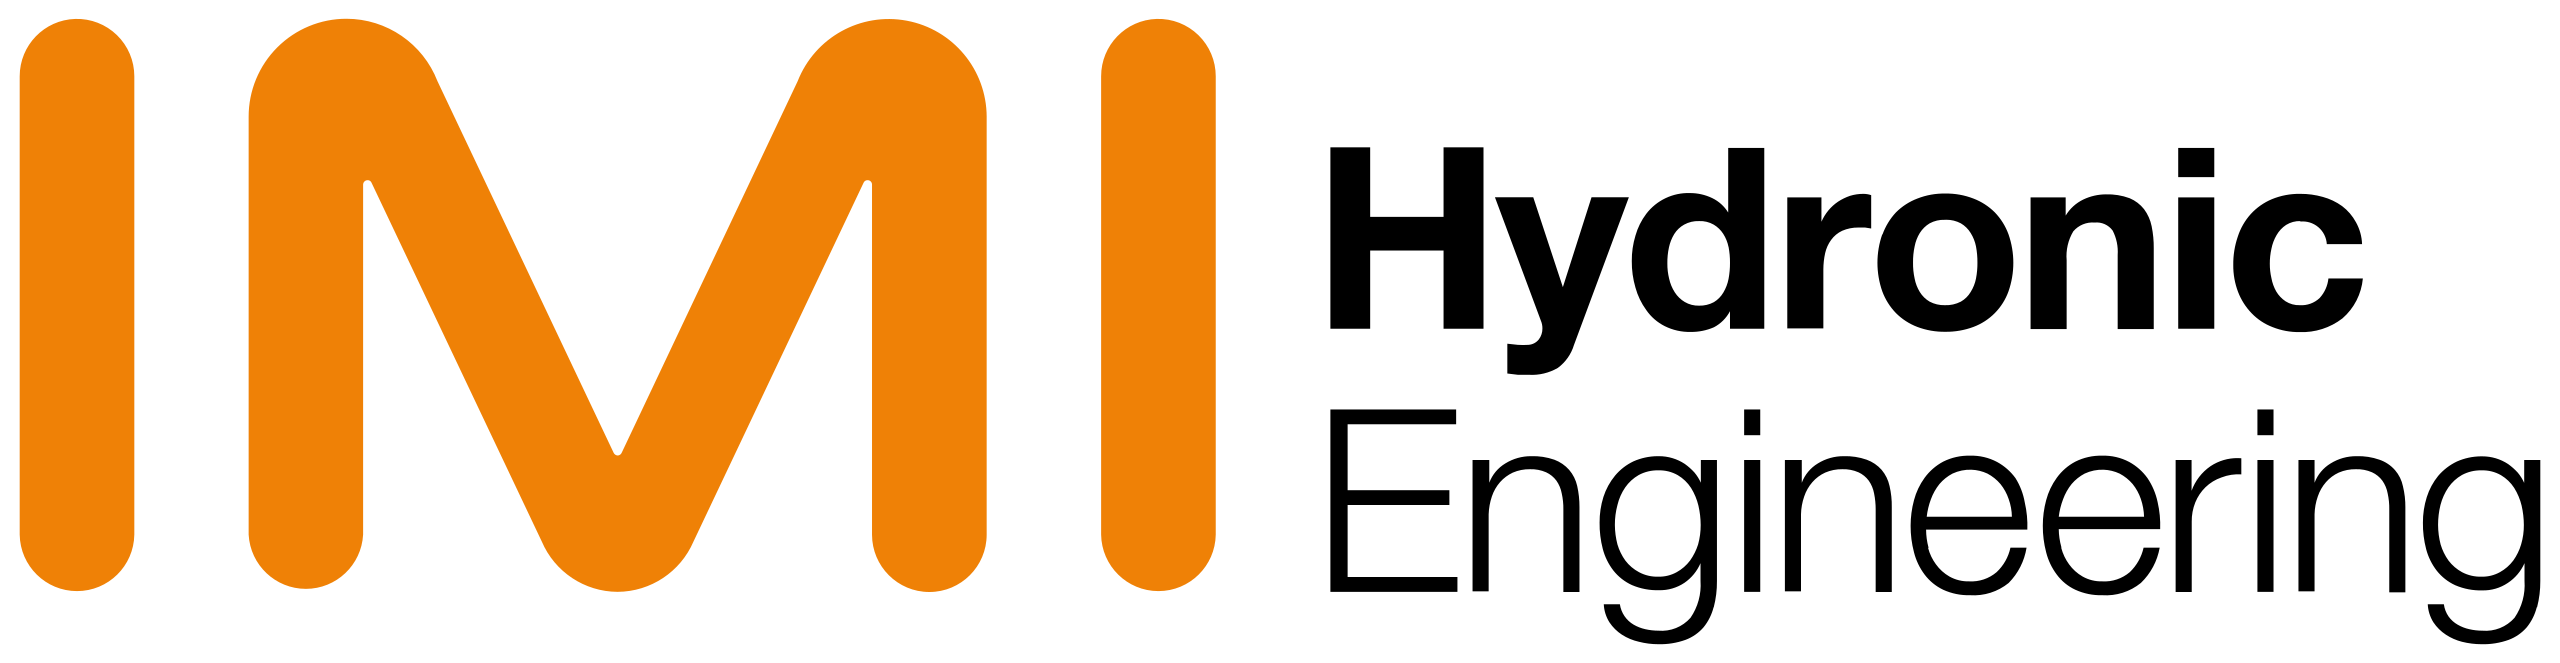 IMI_Hydronic_Engineering_Deutschland_logo.svg